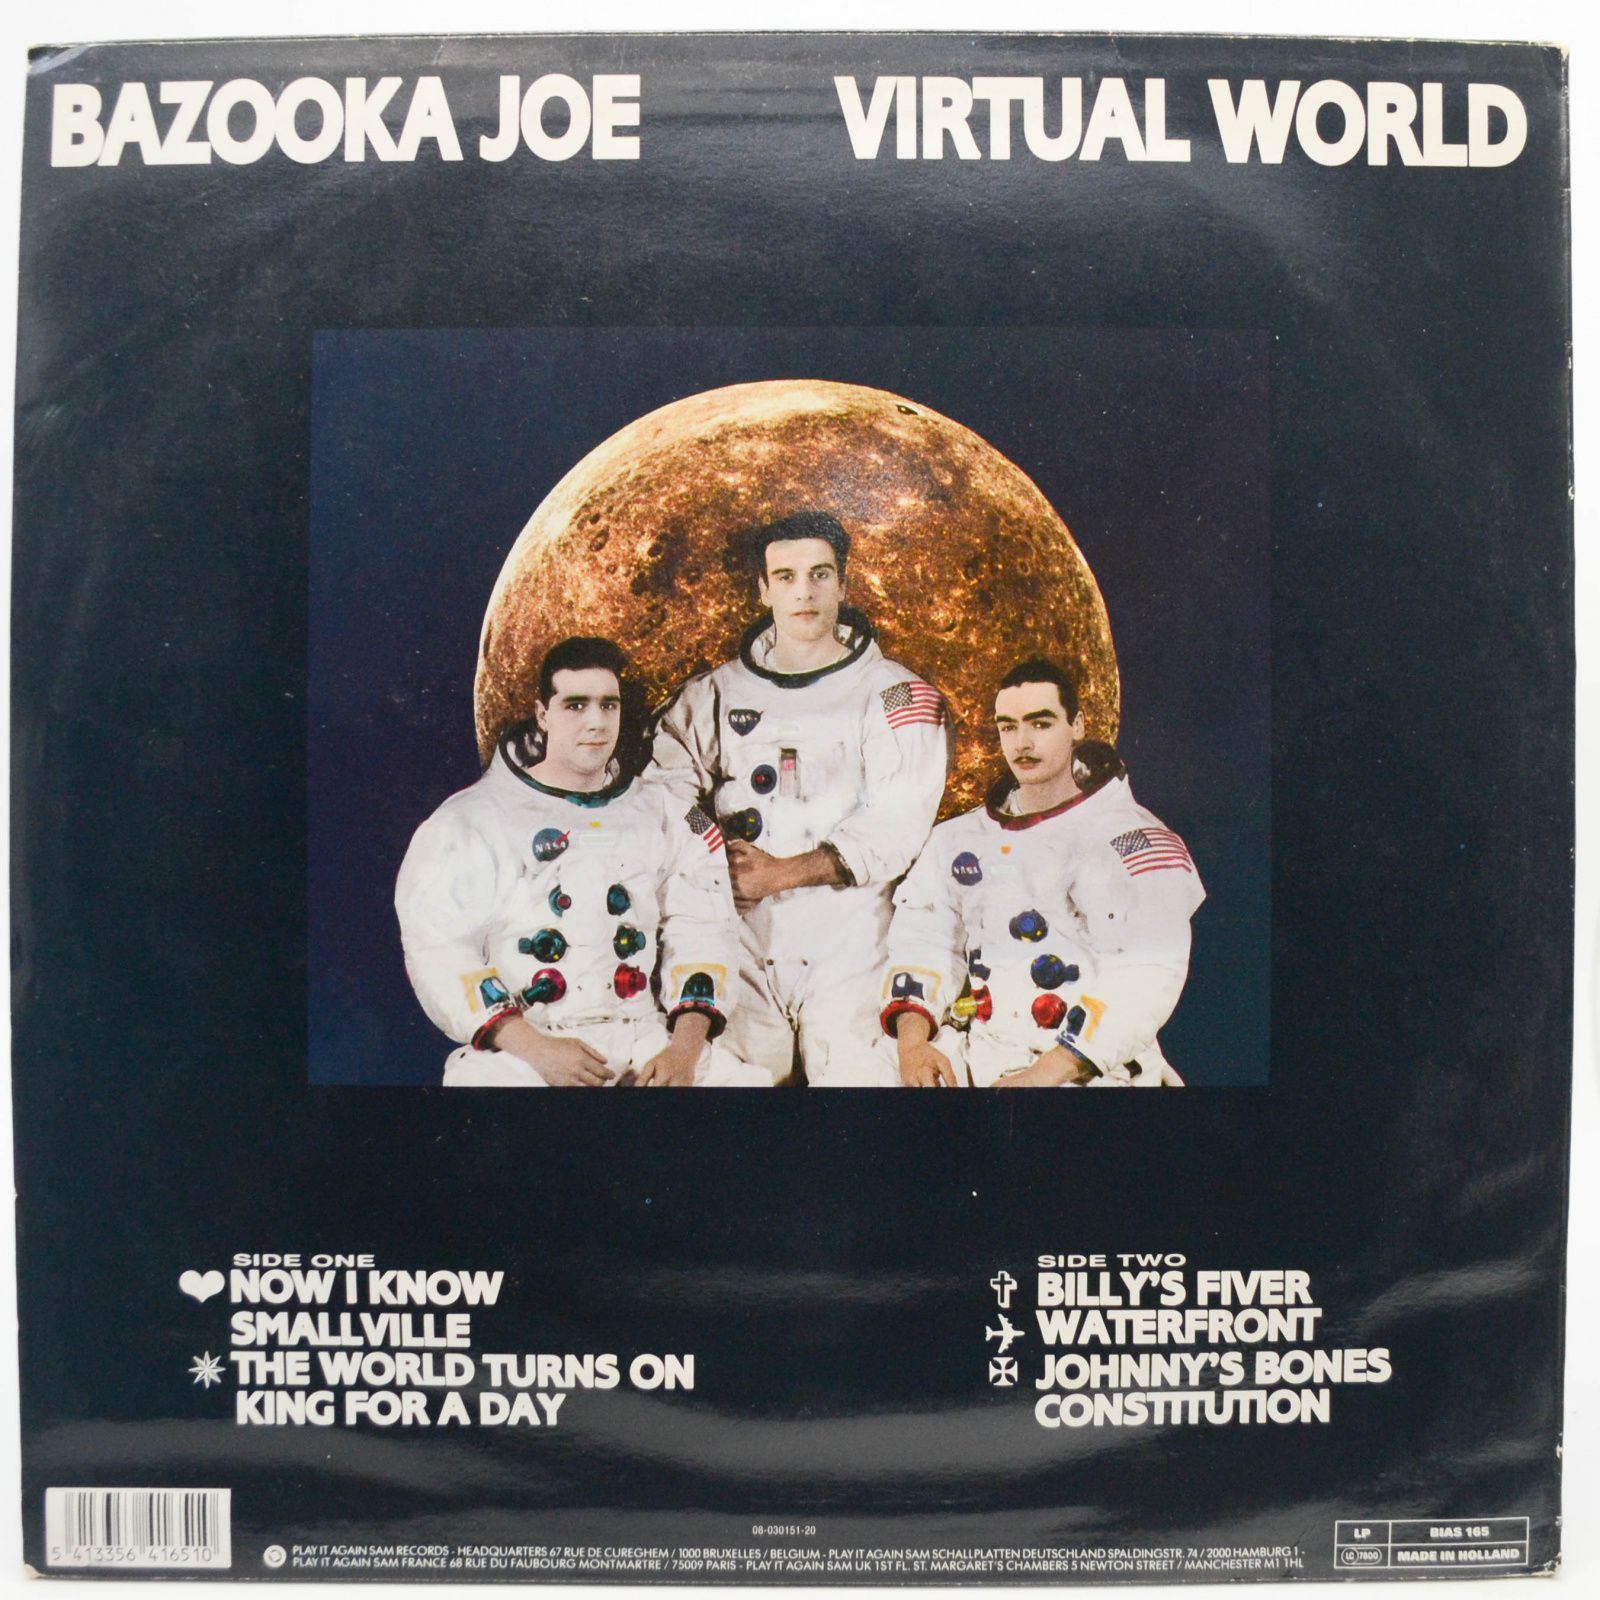 Bazooka Joe — Virtual World, 1990